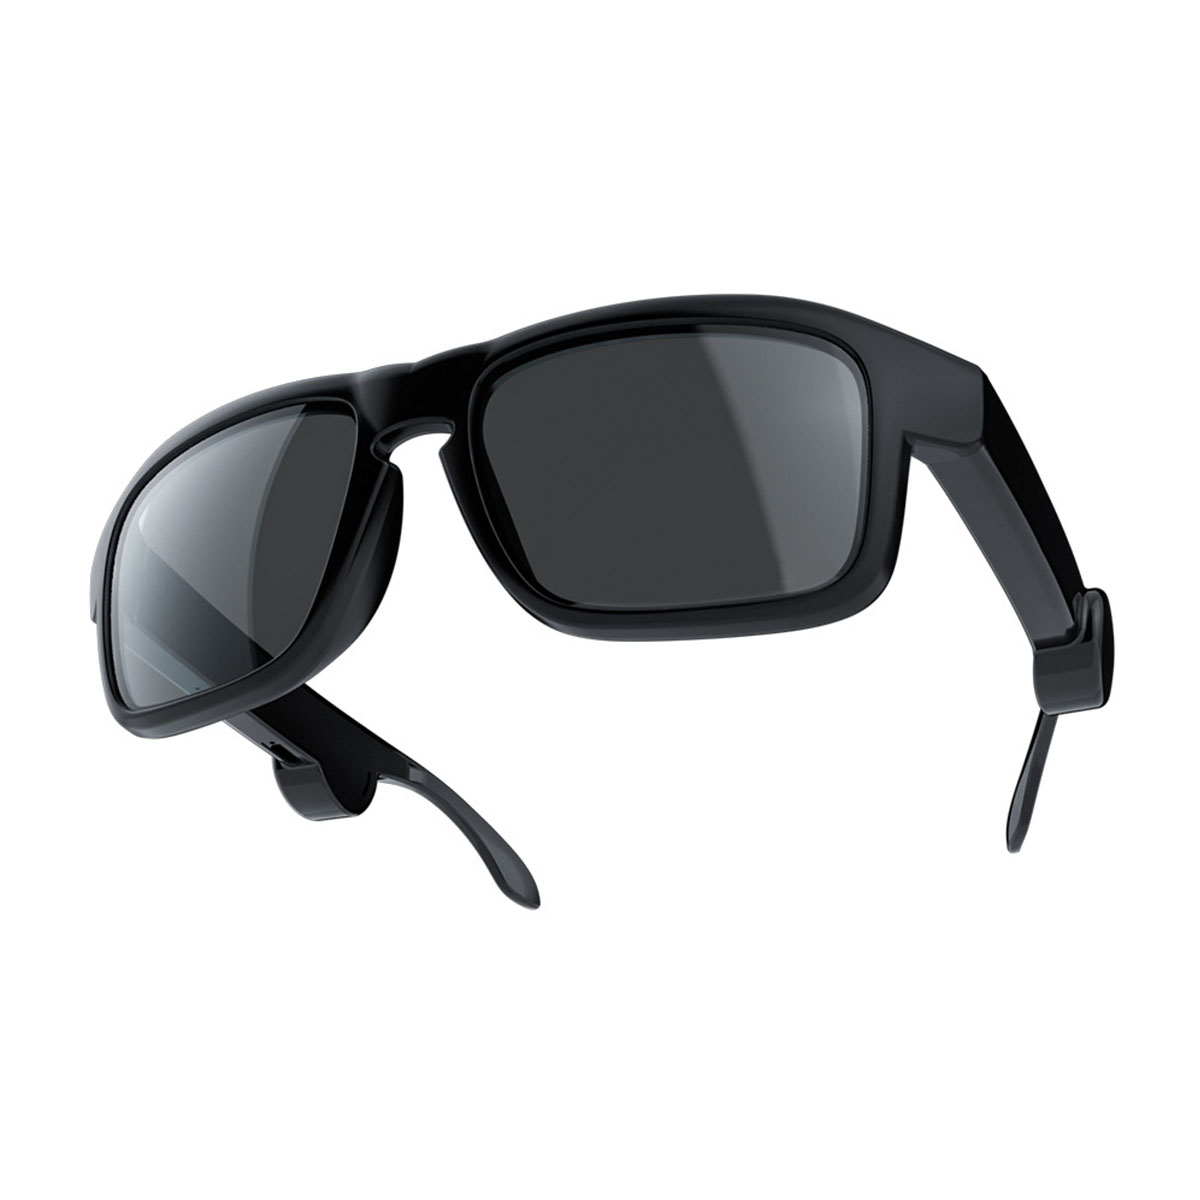 HD Audio, Sound, Bluetooth Brillen, Smart für Voice Control Bluetooth-Headset Wireless - BRIGHTAKE Headset Schwarz Eyeglasses